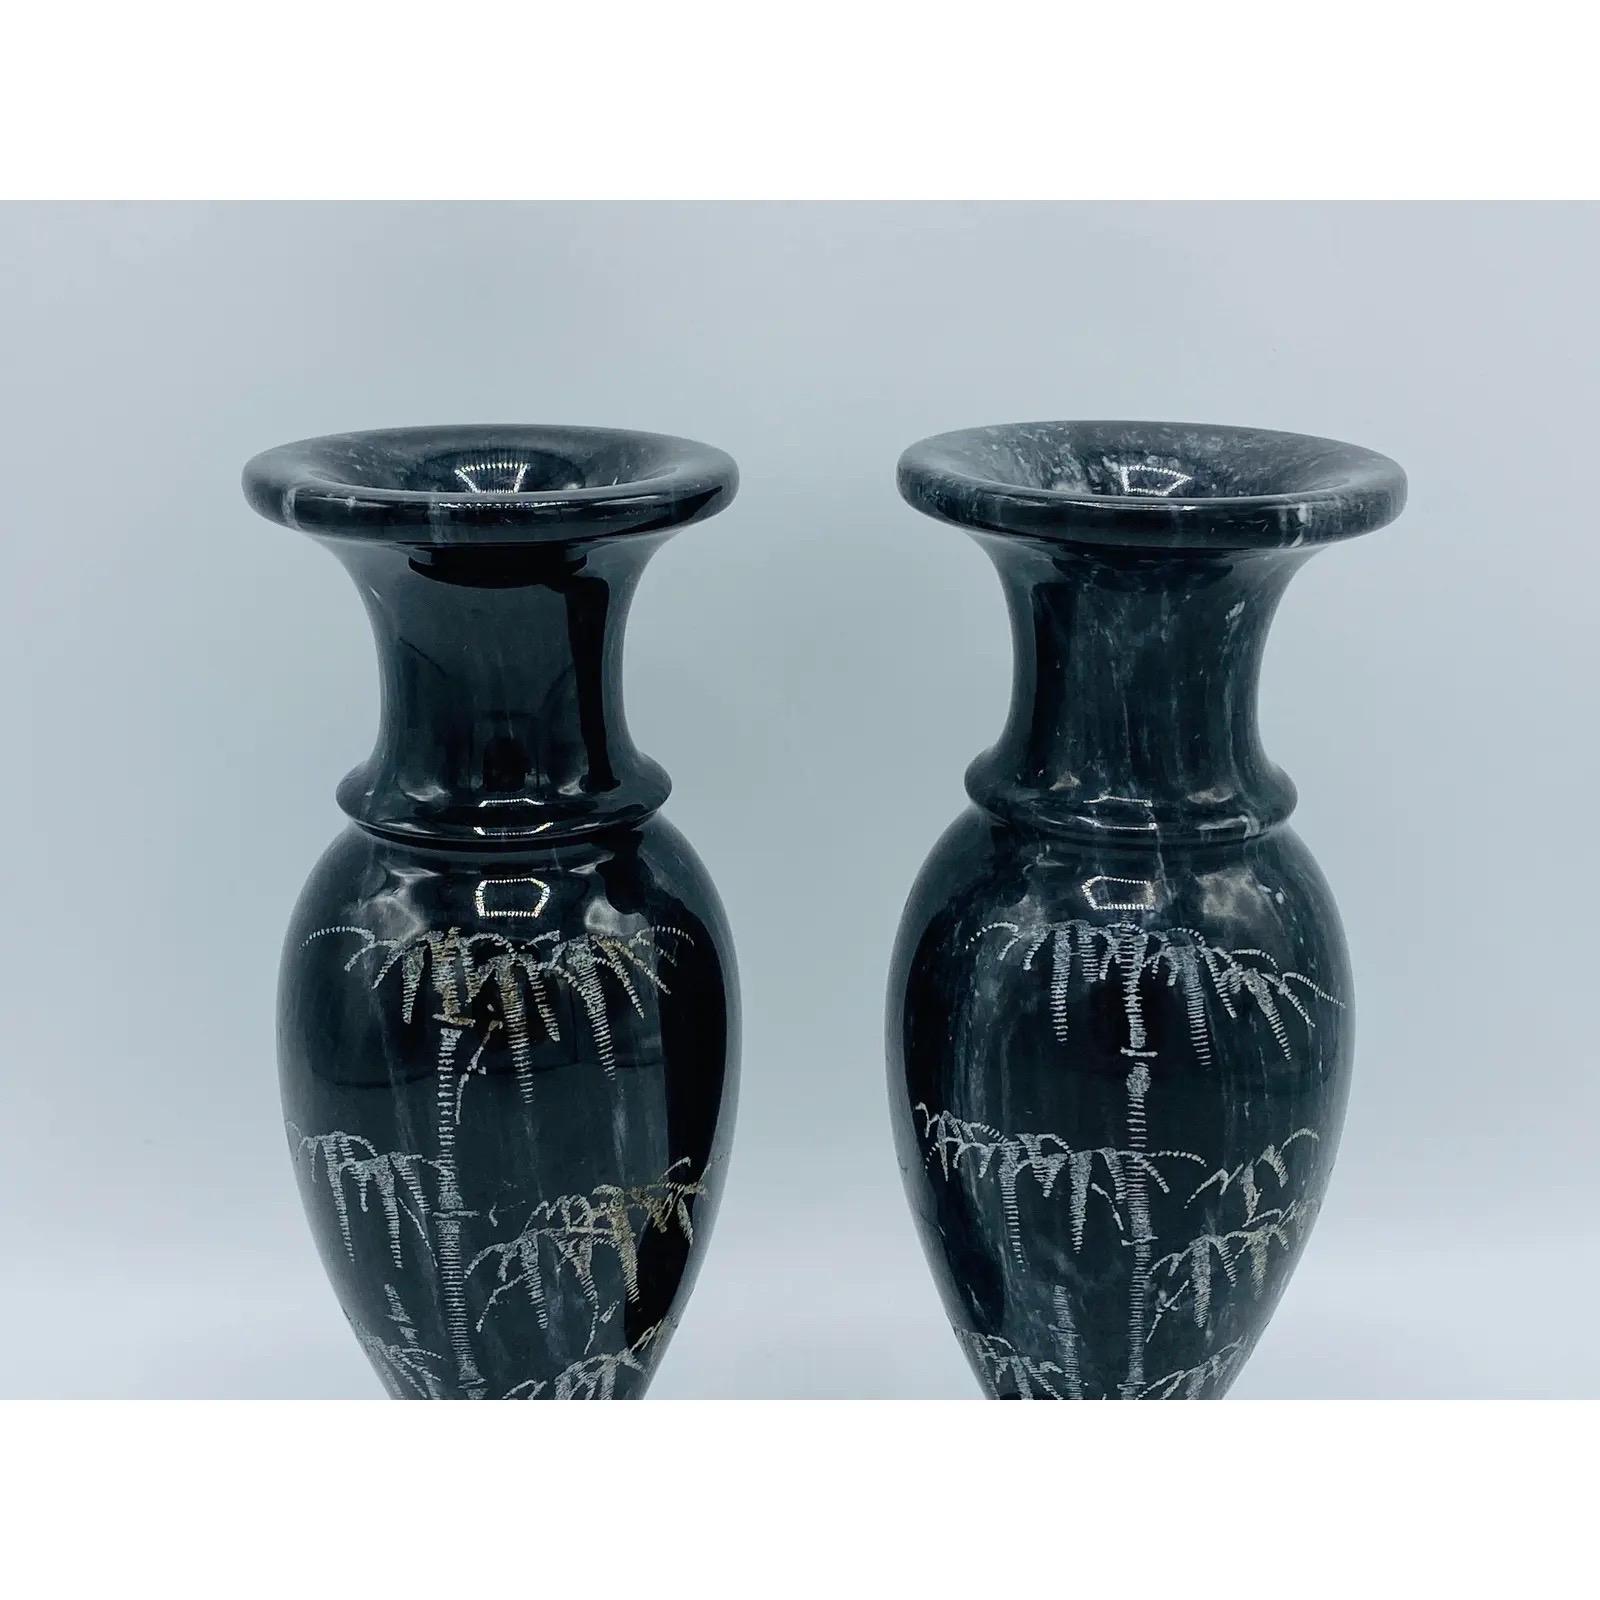 Voici une superbe paire de vases en marbre italien des années 1960. La paire est principalement noire avec des veines blanches et un motif de bambou gravé le long d'un côté de chaque paire. Lourd, pesant 4,7lbs/paire.